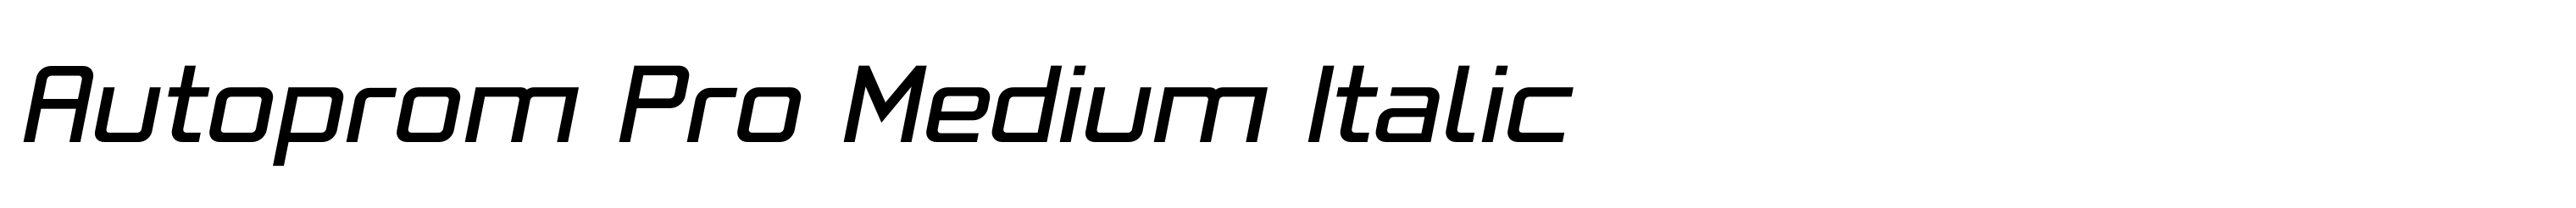 Autoprom Pro Medium Italic